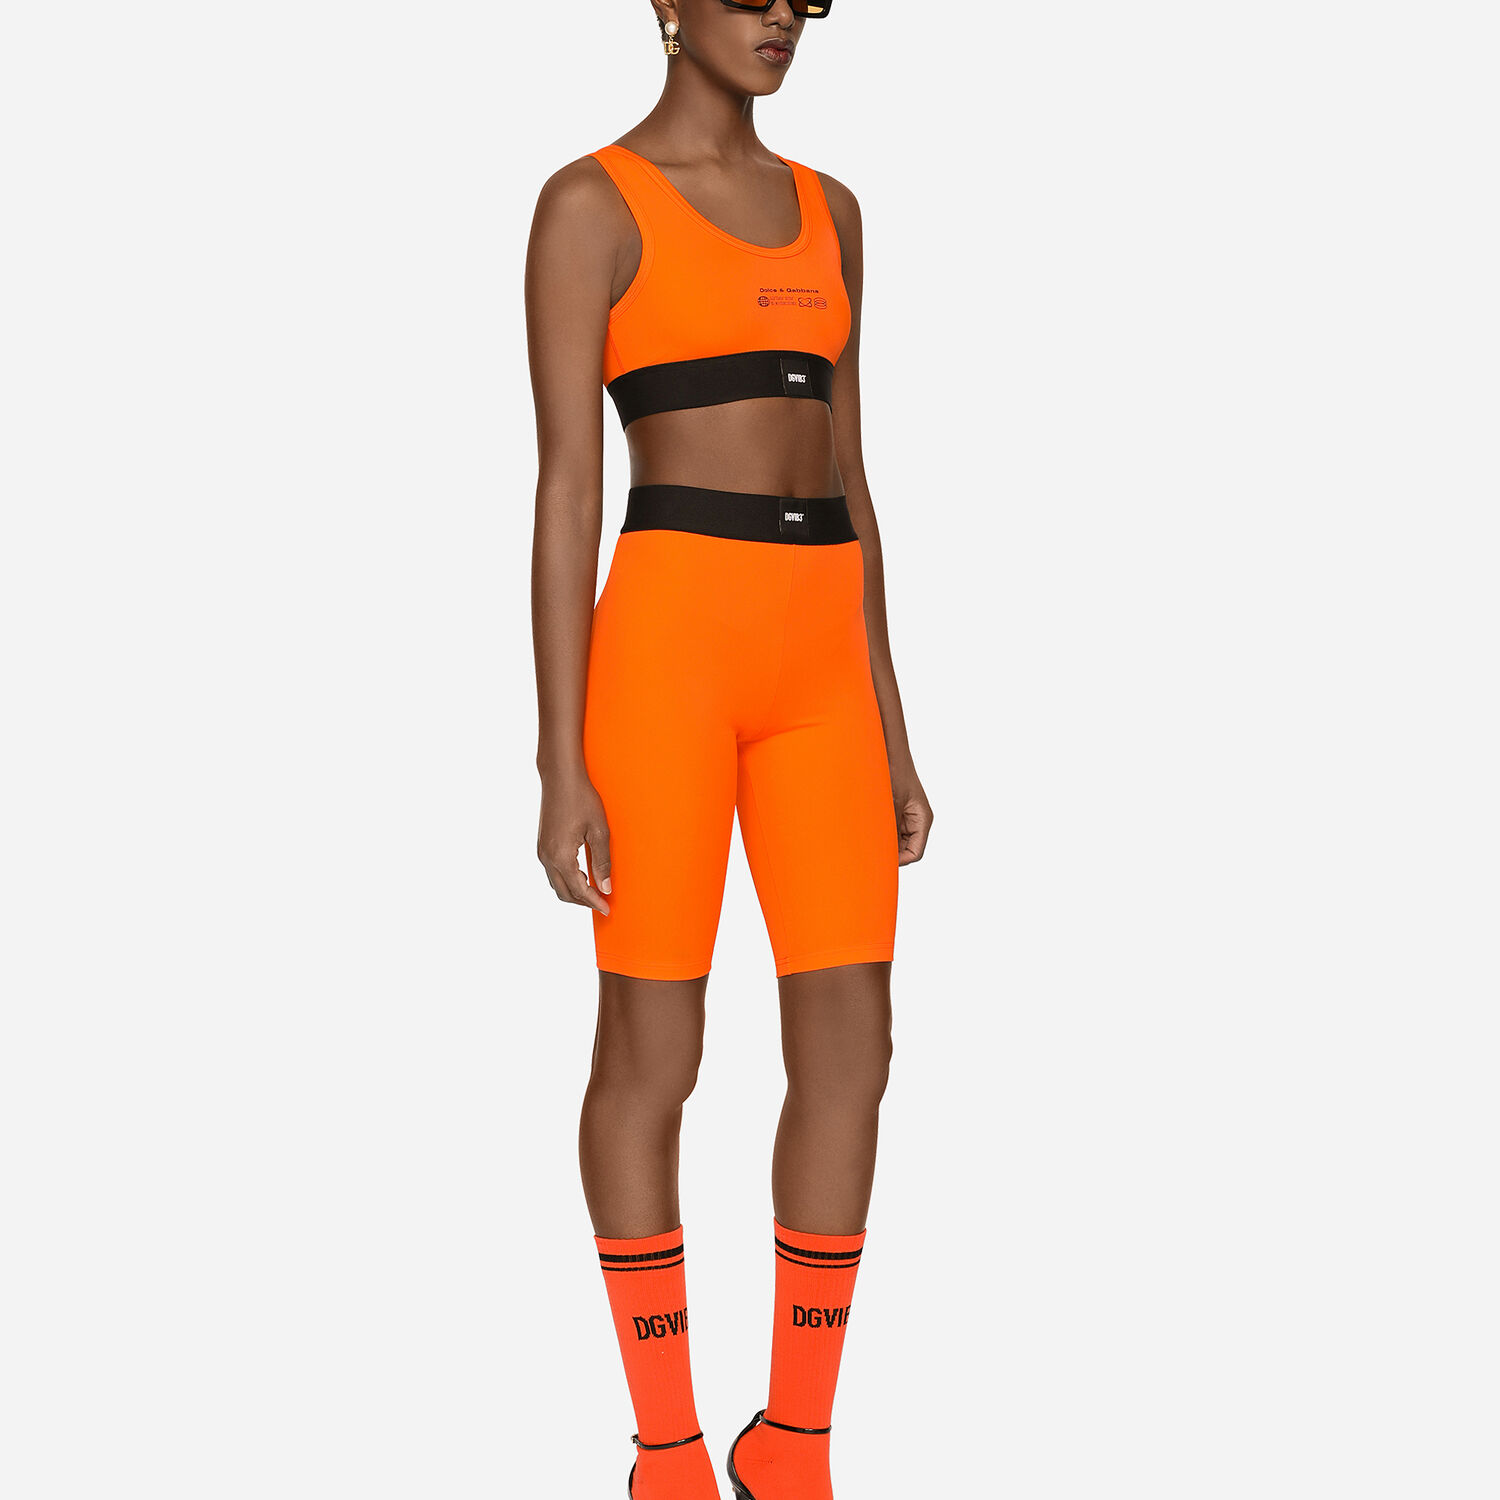 Spandex jersey bralette top DGVIB3 in Orange for Women